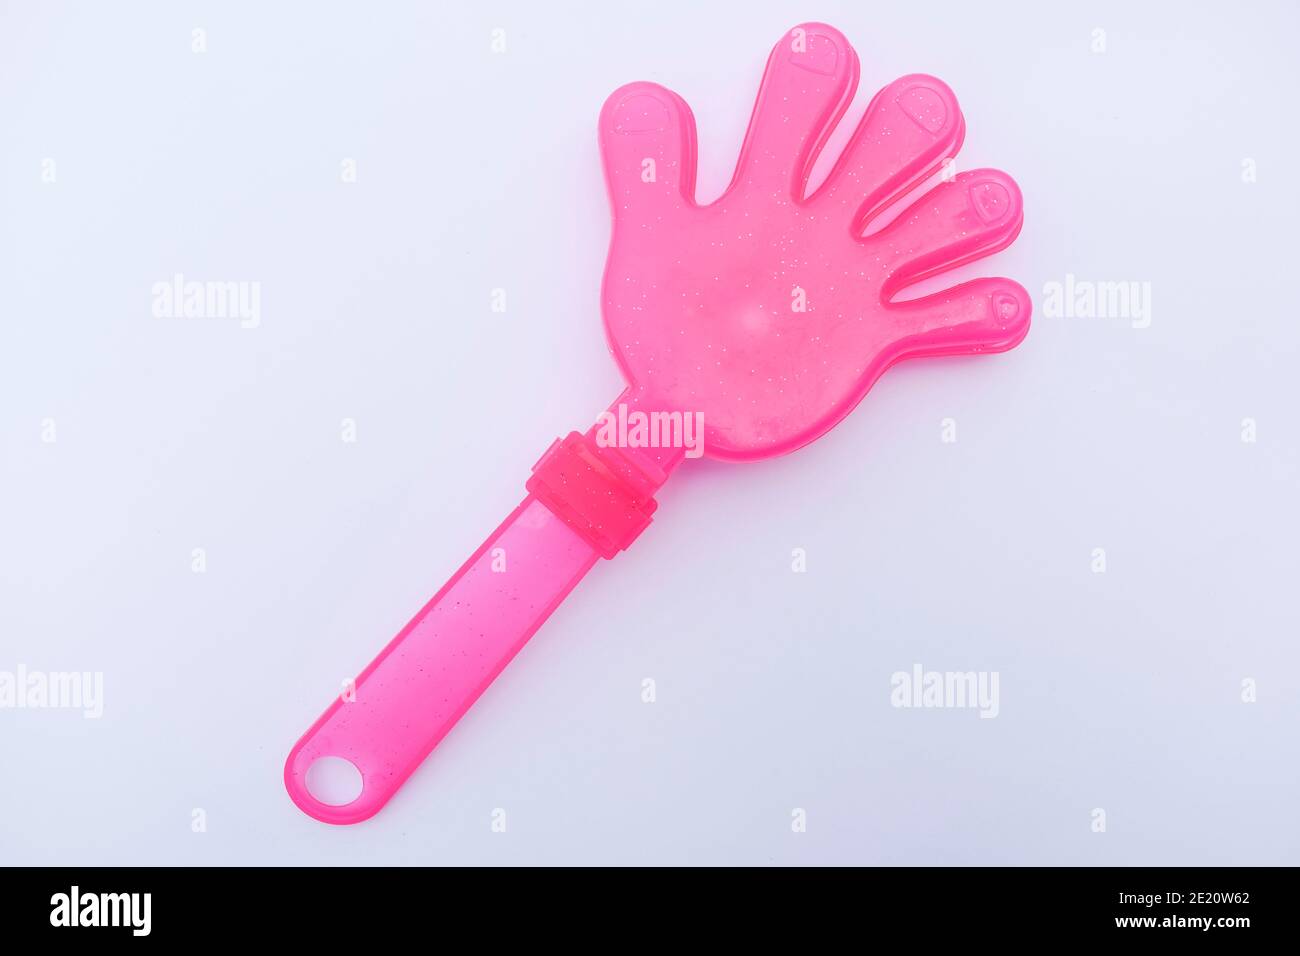 Jouet de couleur rose pour les mains clapper en forme de paume jouets pour les enfants. Également utilisé pendant le festival de cerf-volant uttarayan pour faire noice quand le cerf-volant est coupé. Objet en plastique Banque D'Images